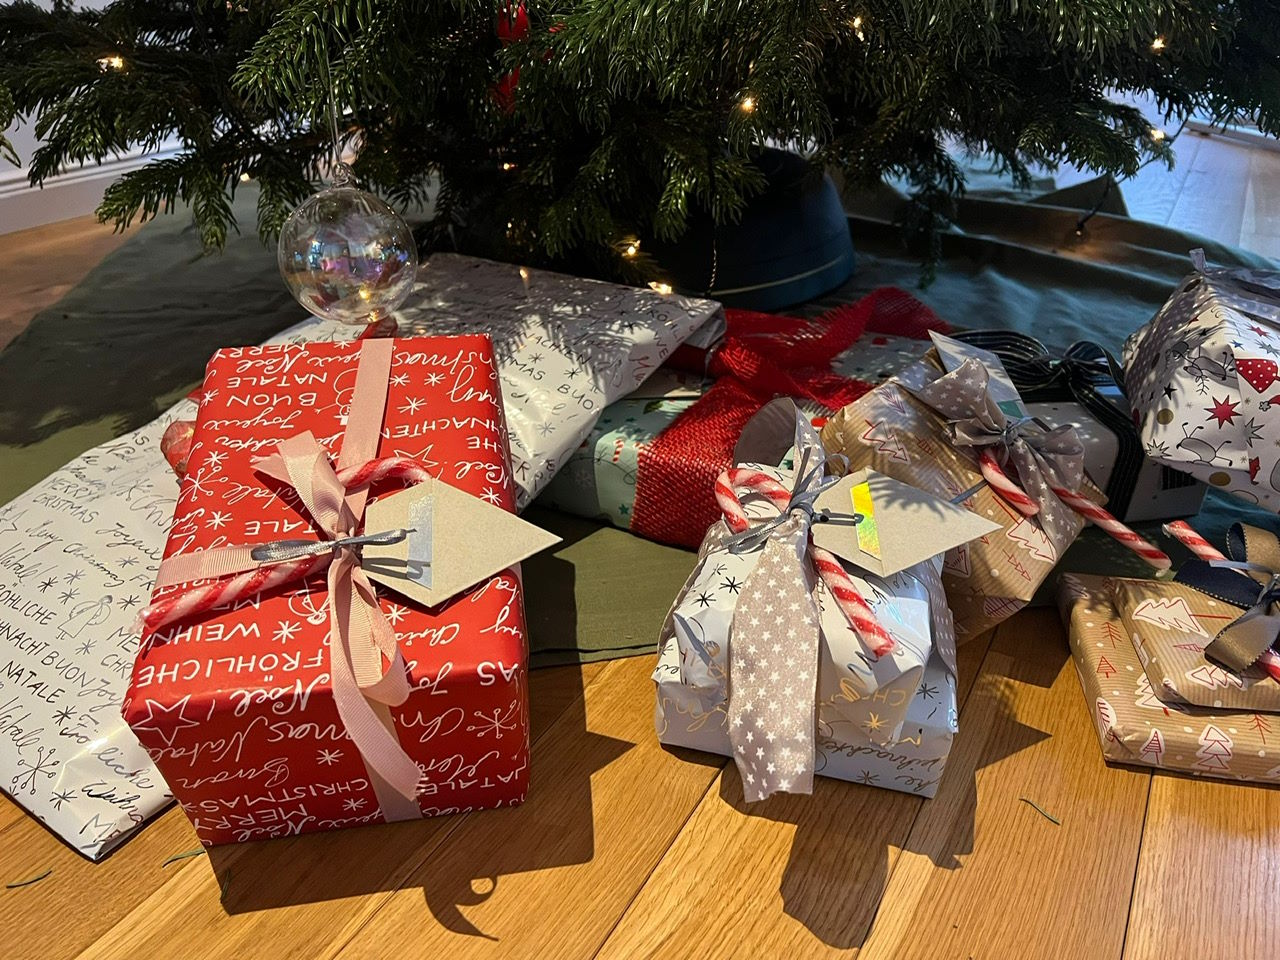 hübsch eingepackte Geschenke für die Kinder unter dem Weihnachtsbauf